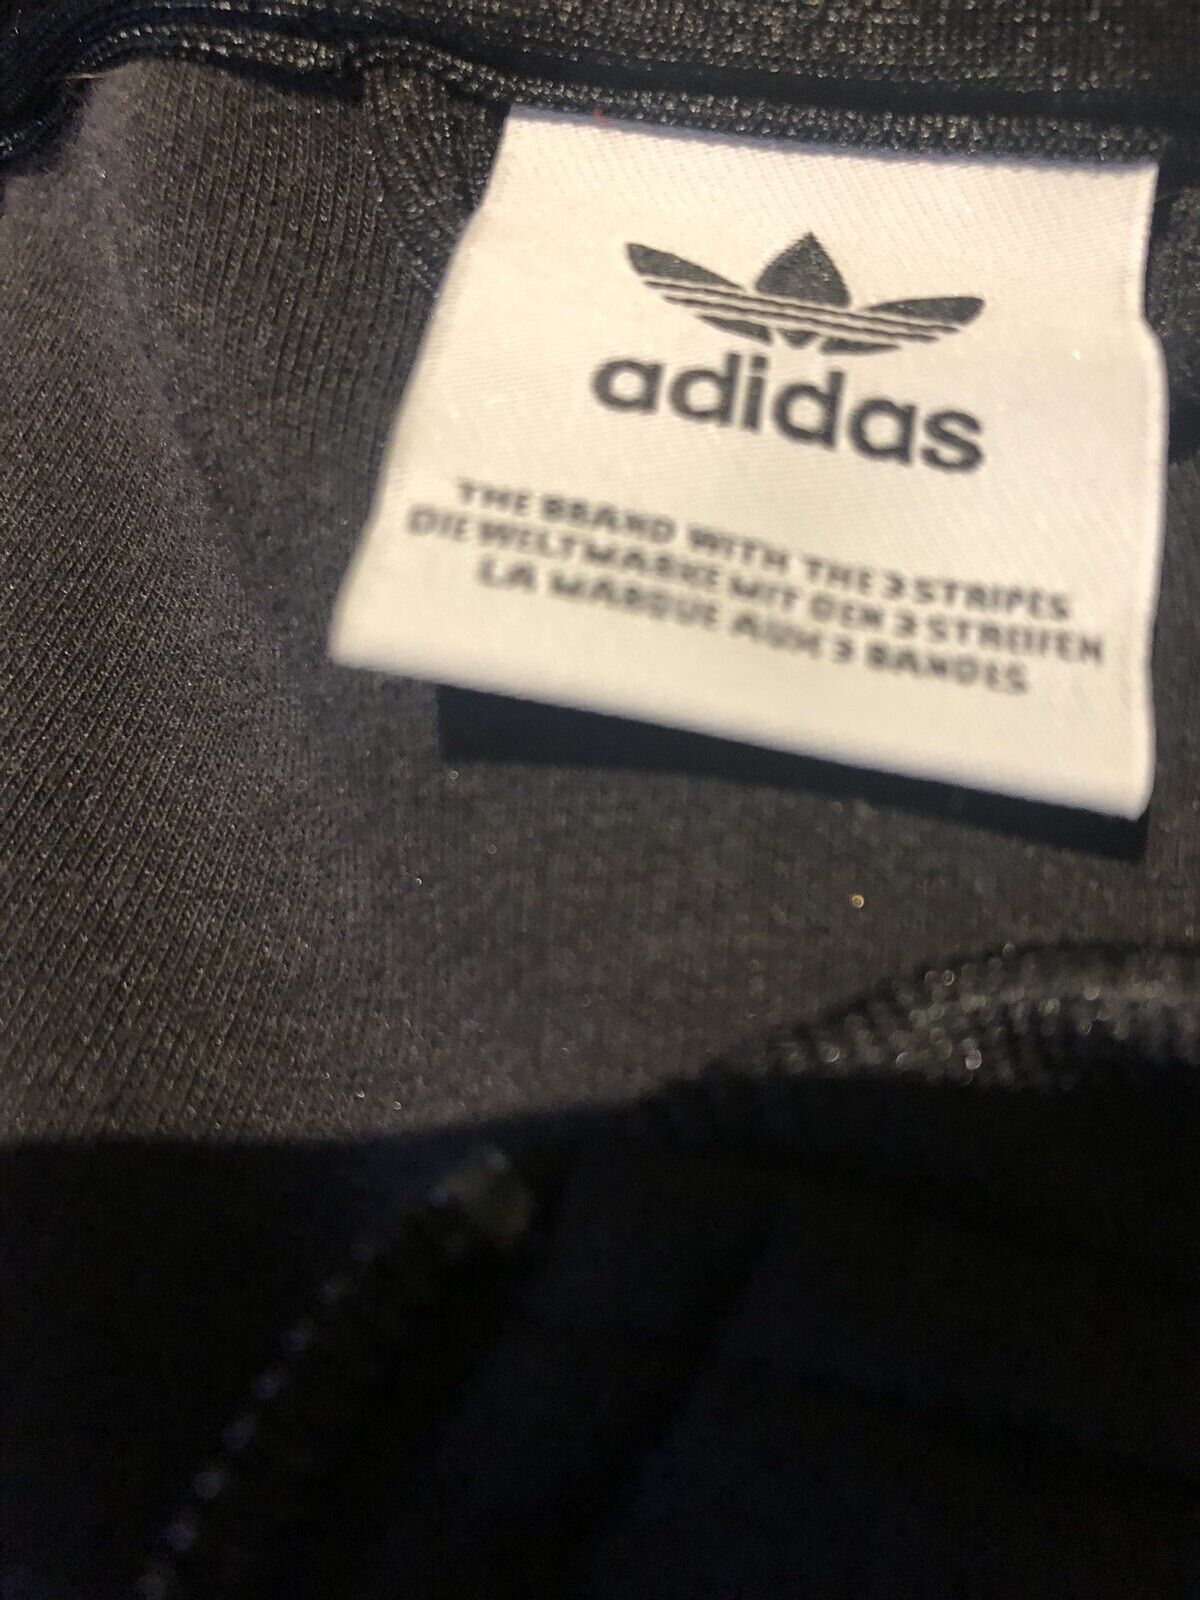 Adidas zip up jacket - image 3